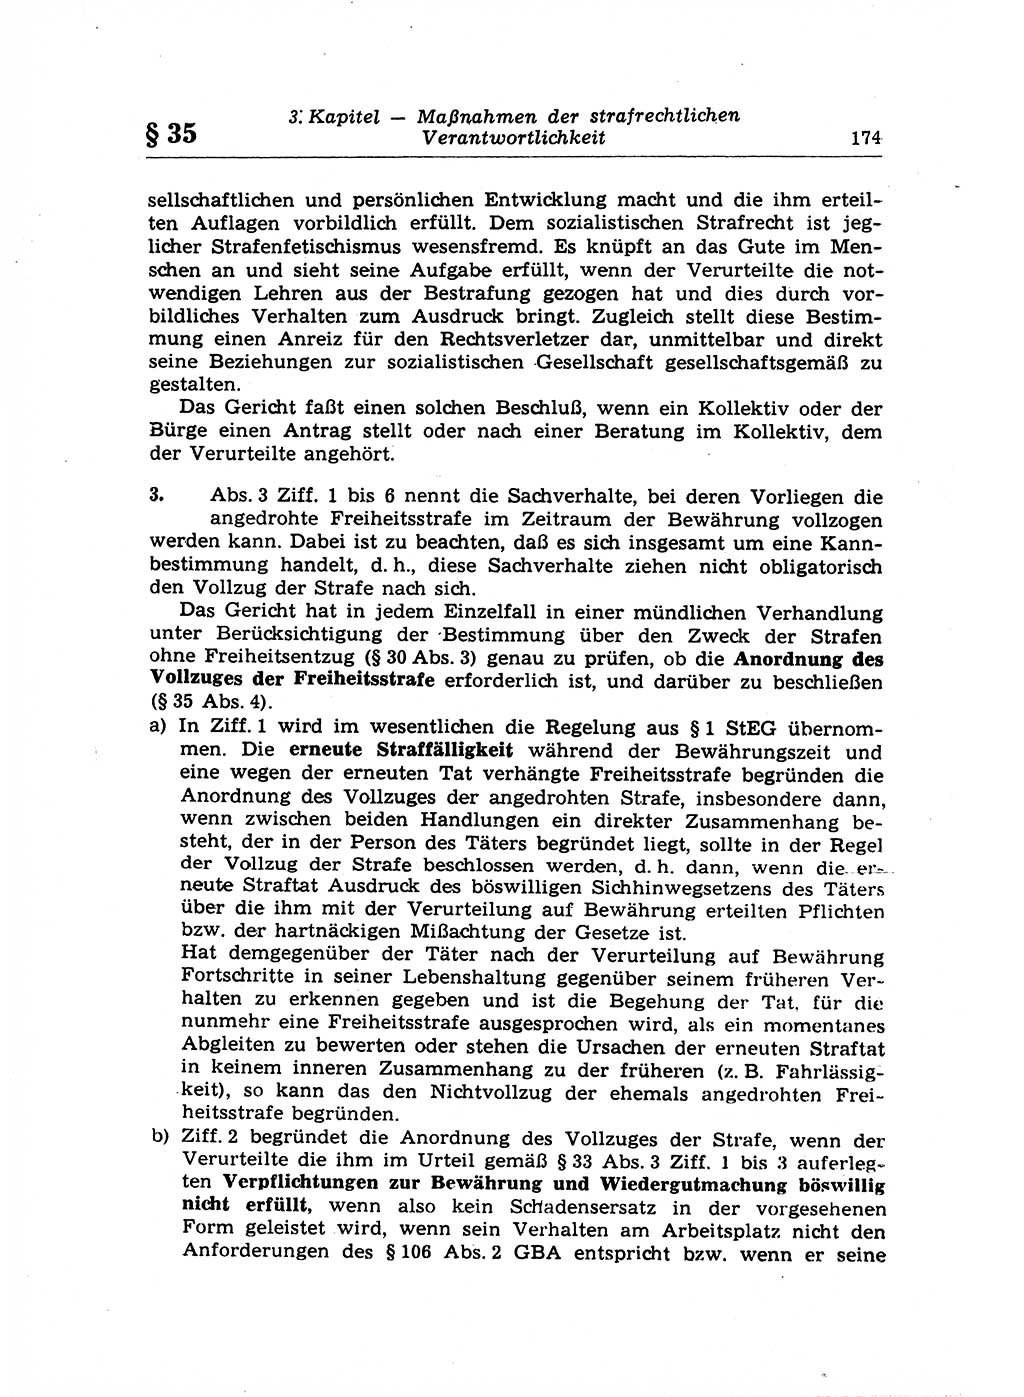 Strafrecht der Deutschen Demokratischen Republik (DDR), Lehrkommentar zum Strafgesetzbuch (StGB), Allgemeiner Teil 1969, Seite 174 (Strafr. DDR Lehrkomm. StGB AT 1969, S. 174)